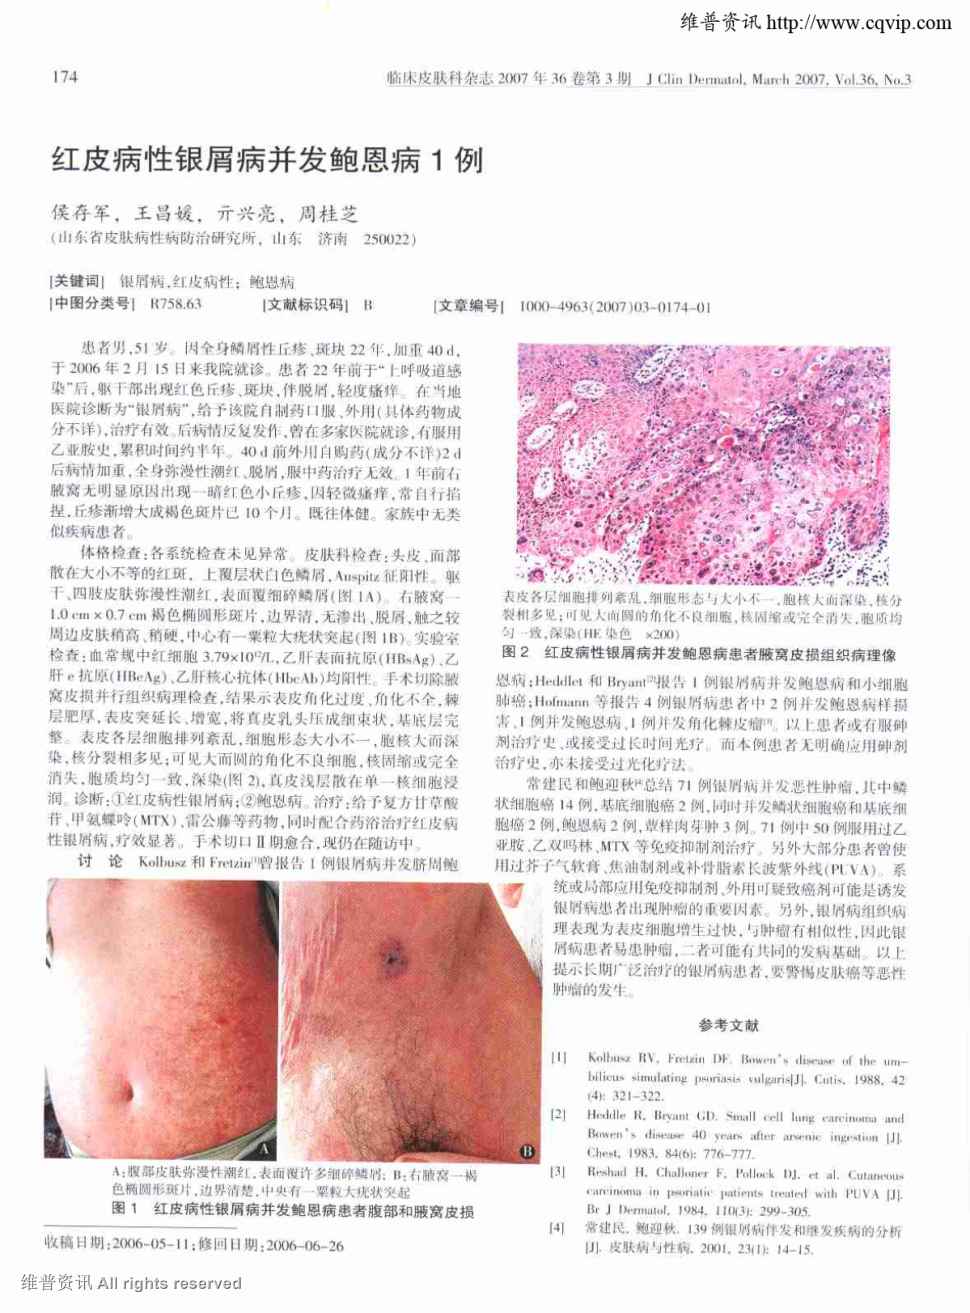 期刊红皮病性银屑病并发鲍恩病1例被引量:1      患者男,51岁.